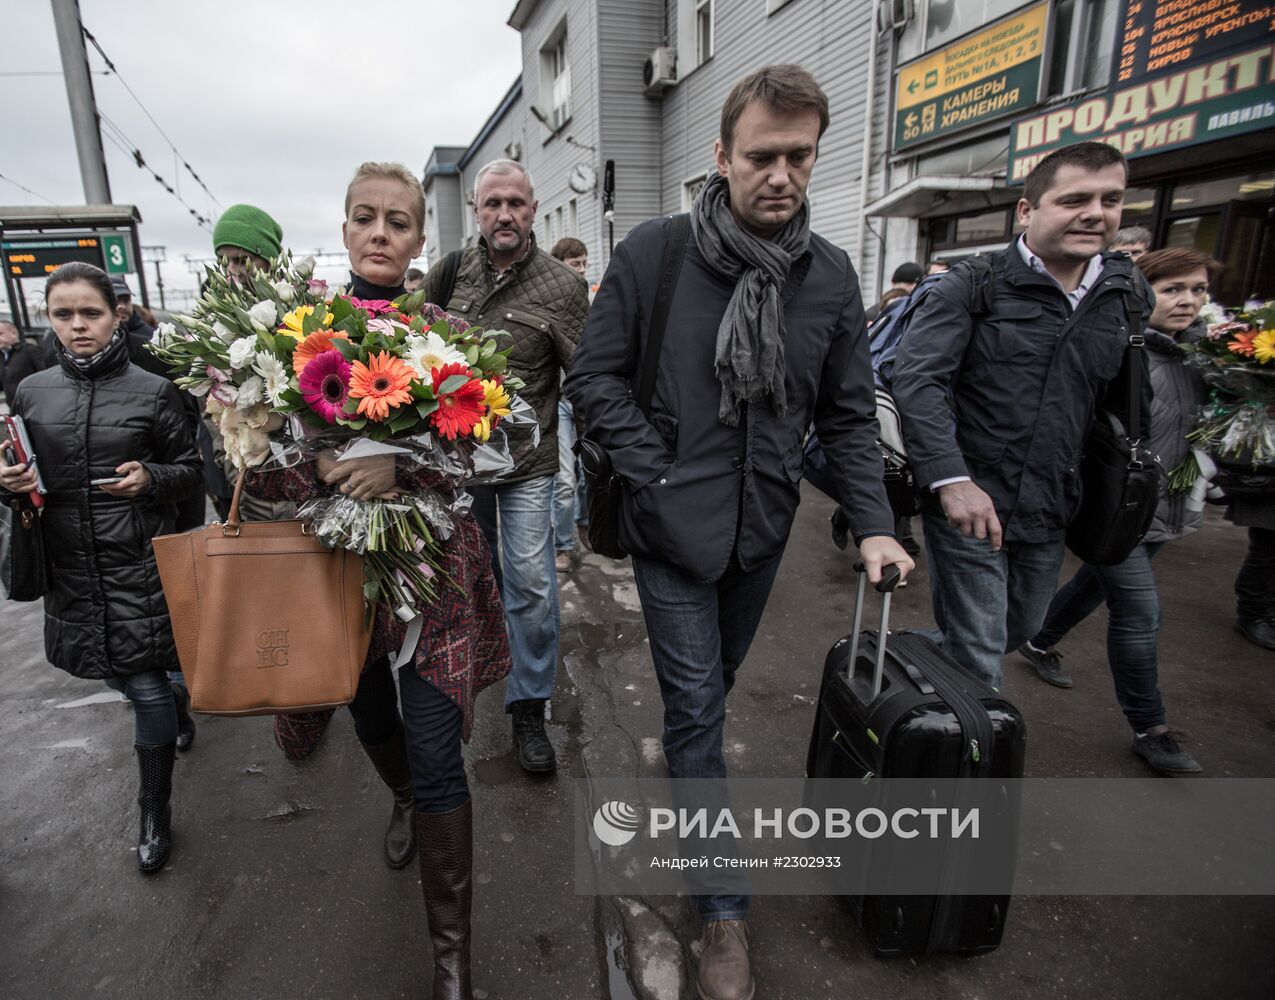 Прибытие оппозиционера А.Навального в Москву после суда в Кирове